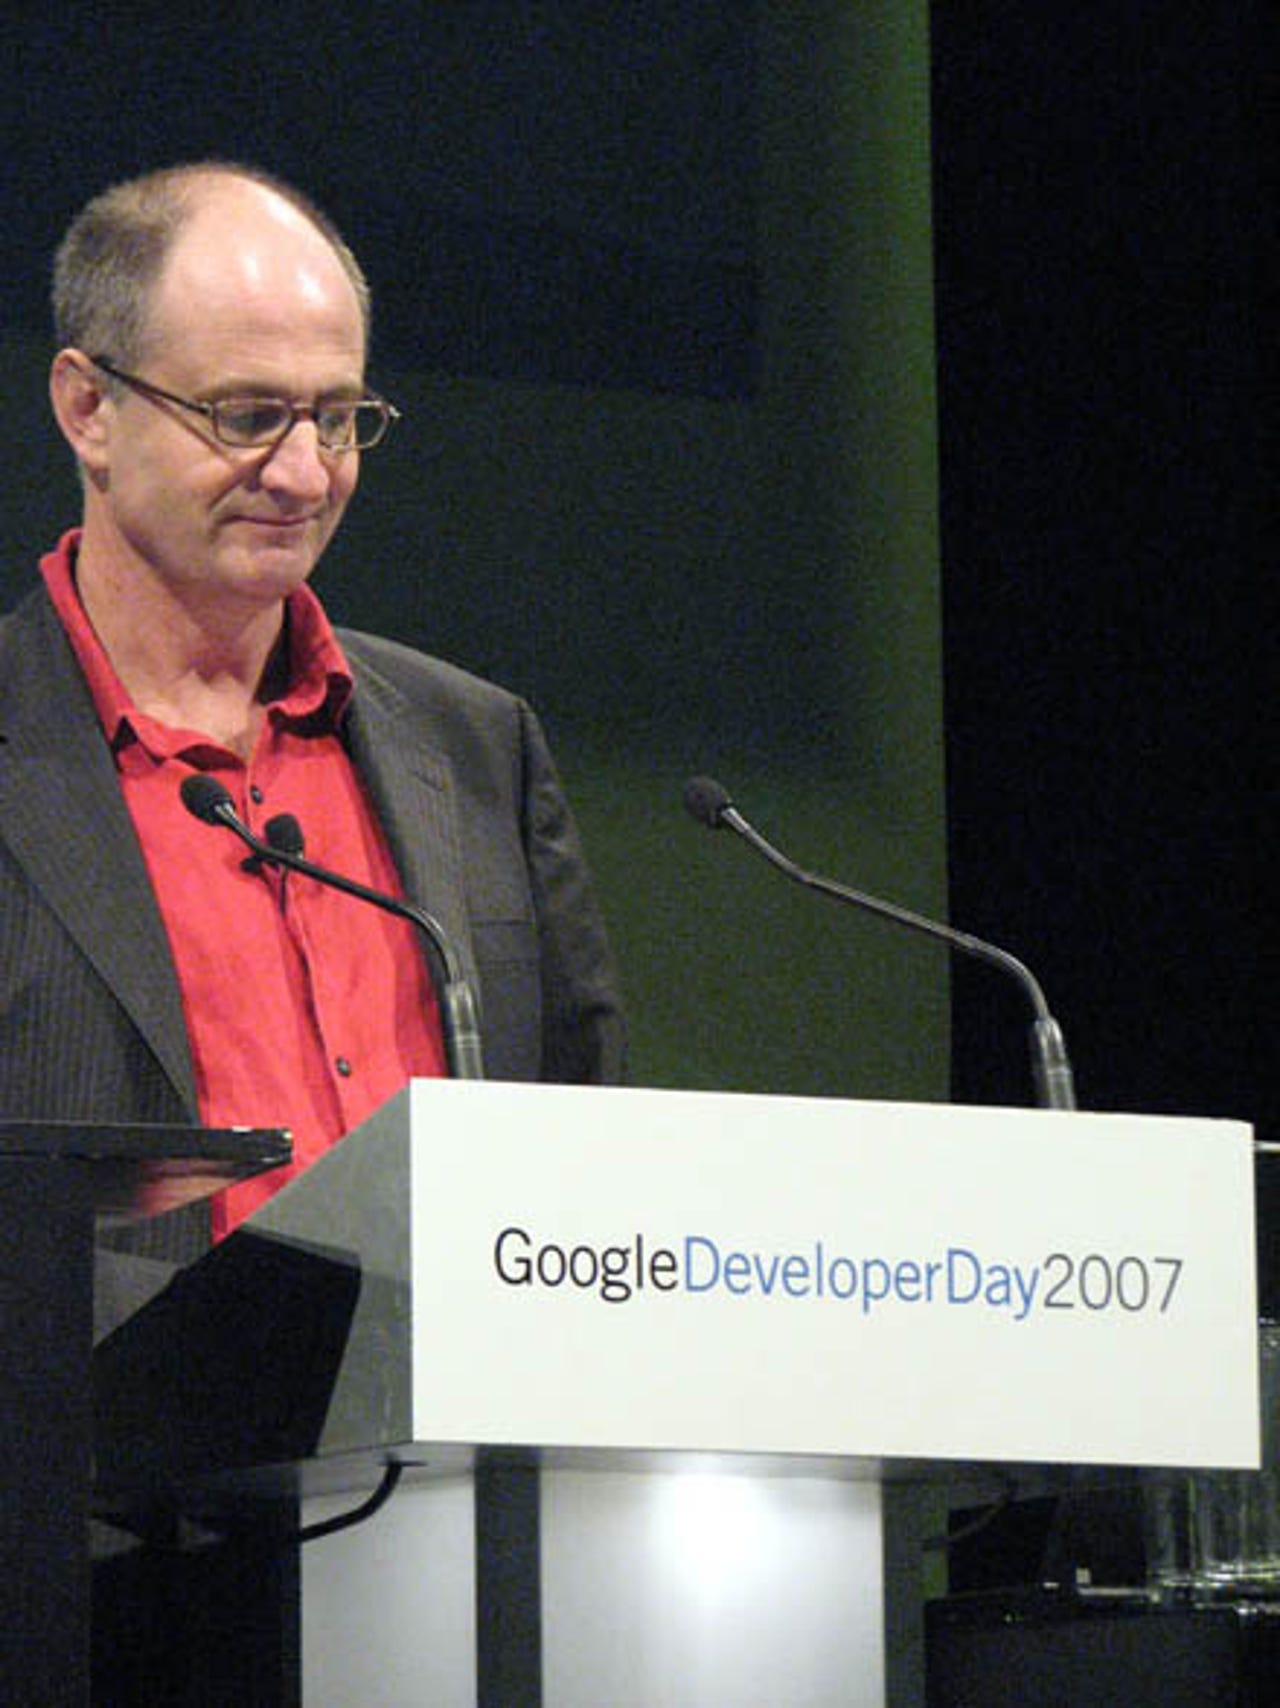 photos-googles-down-under-developer-day15.jpg